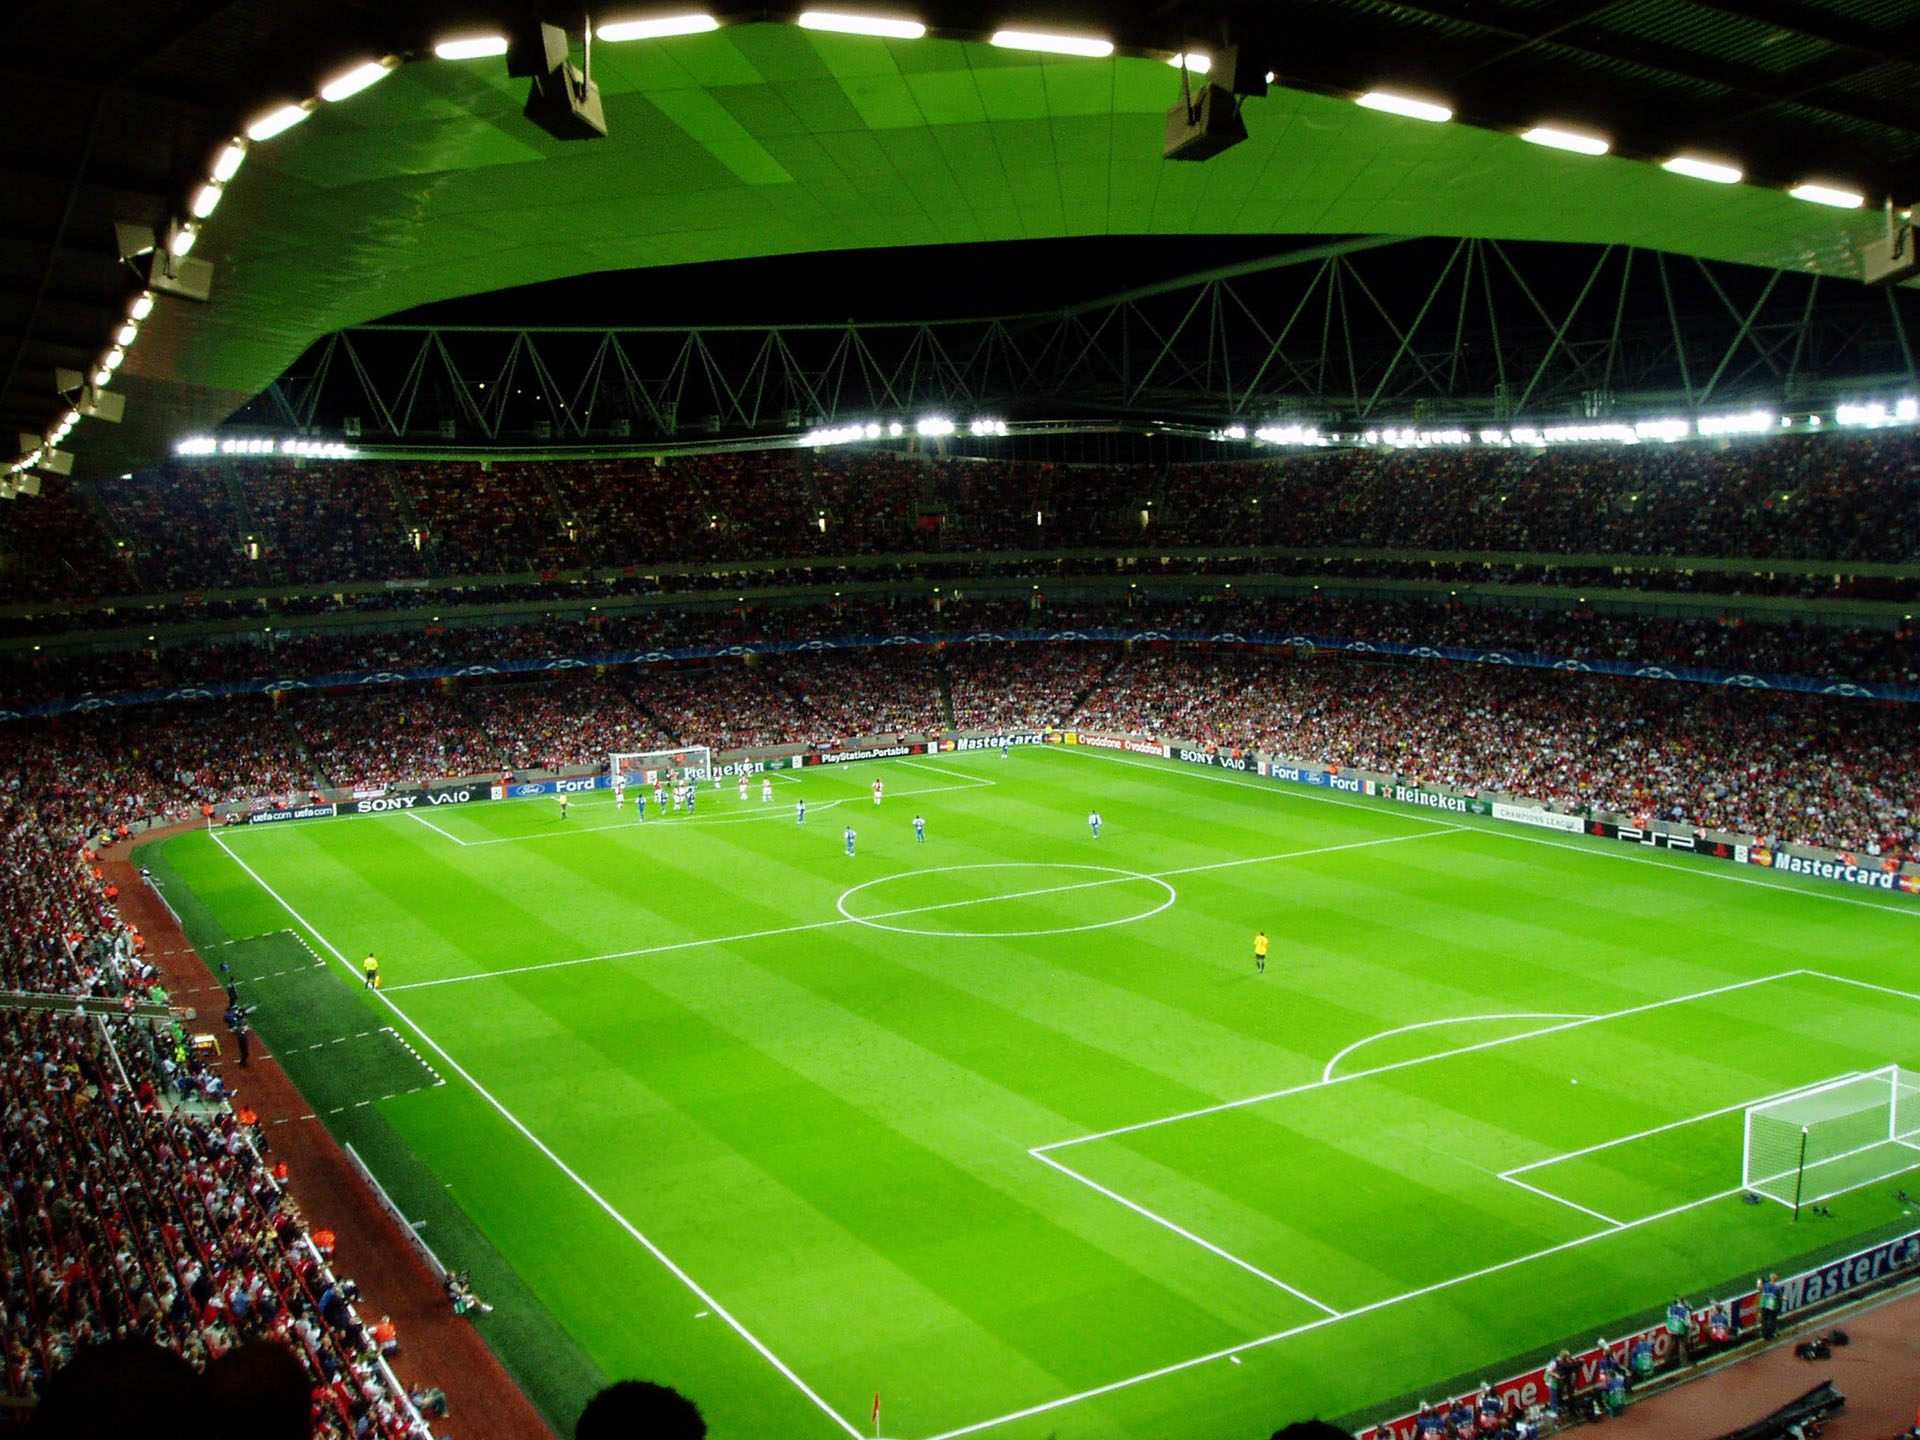 Emirates stadium hd images stadium wallpapers Chainimage